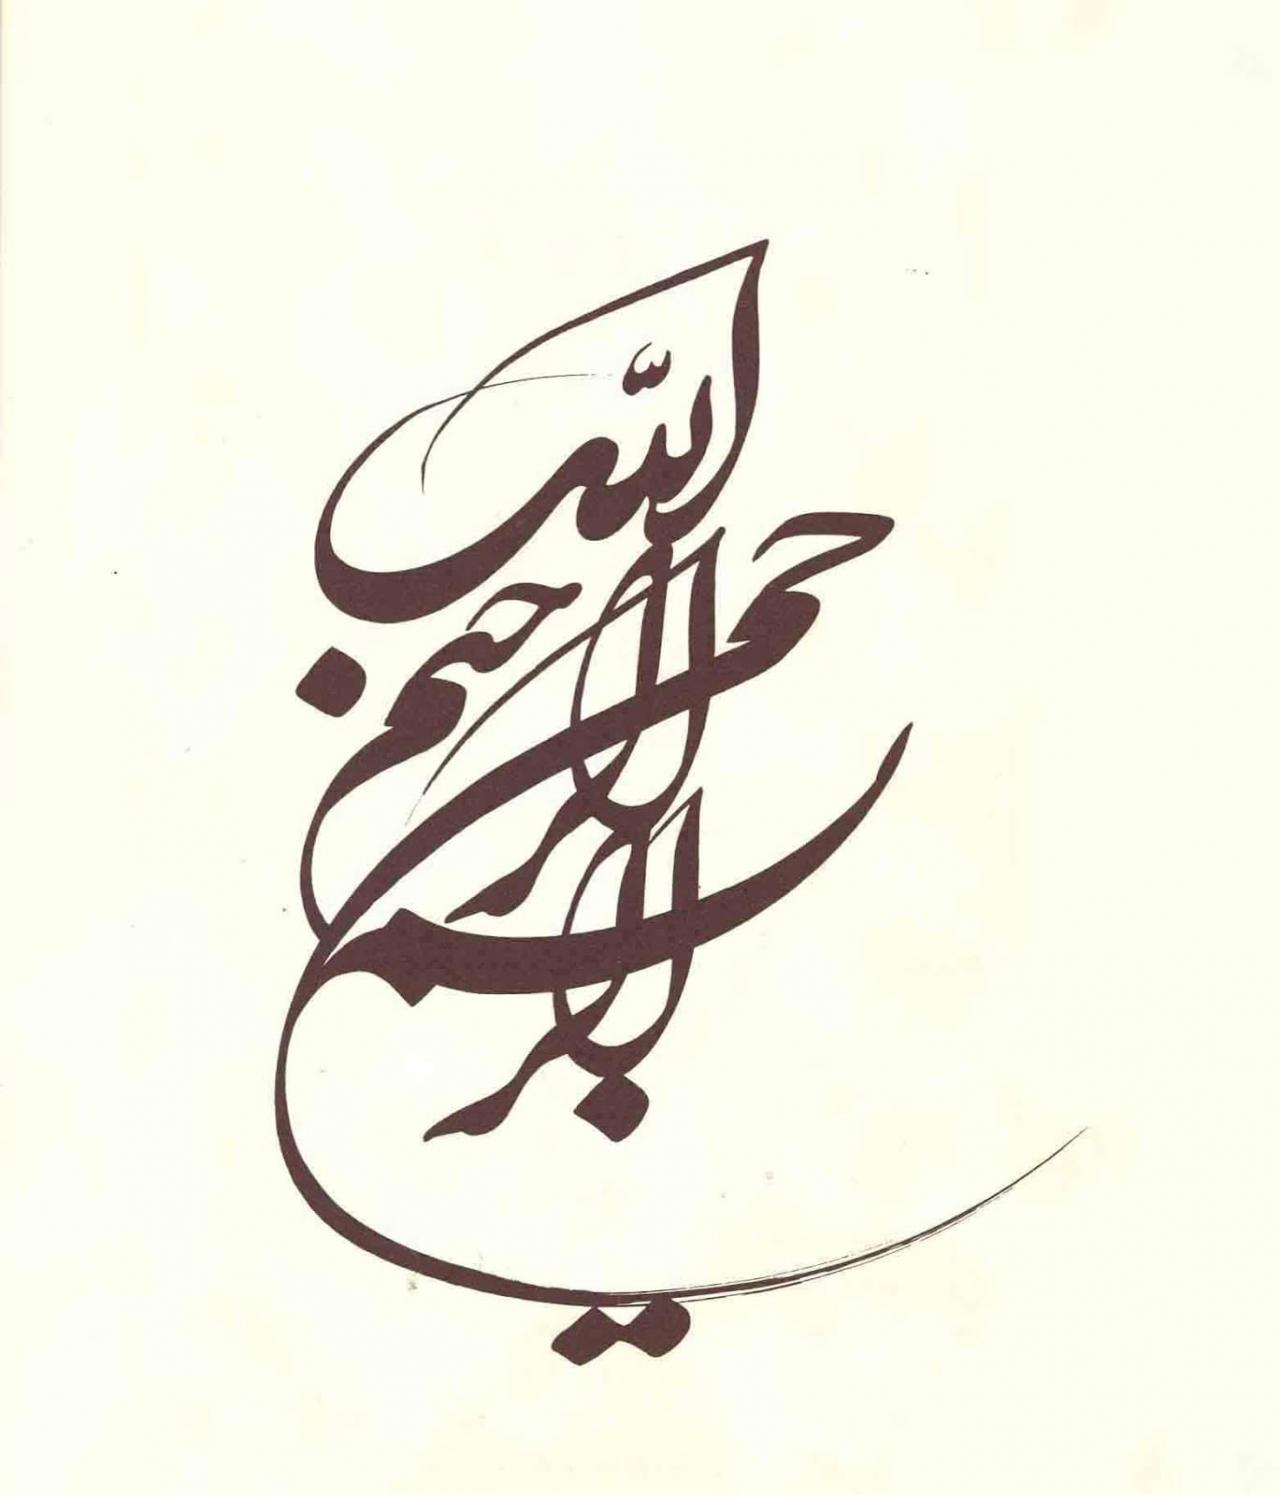 اصل الخط العربي صور عن في وجماله